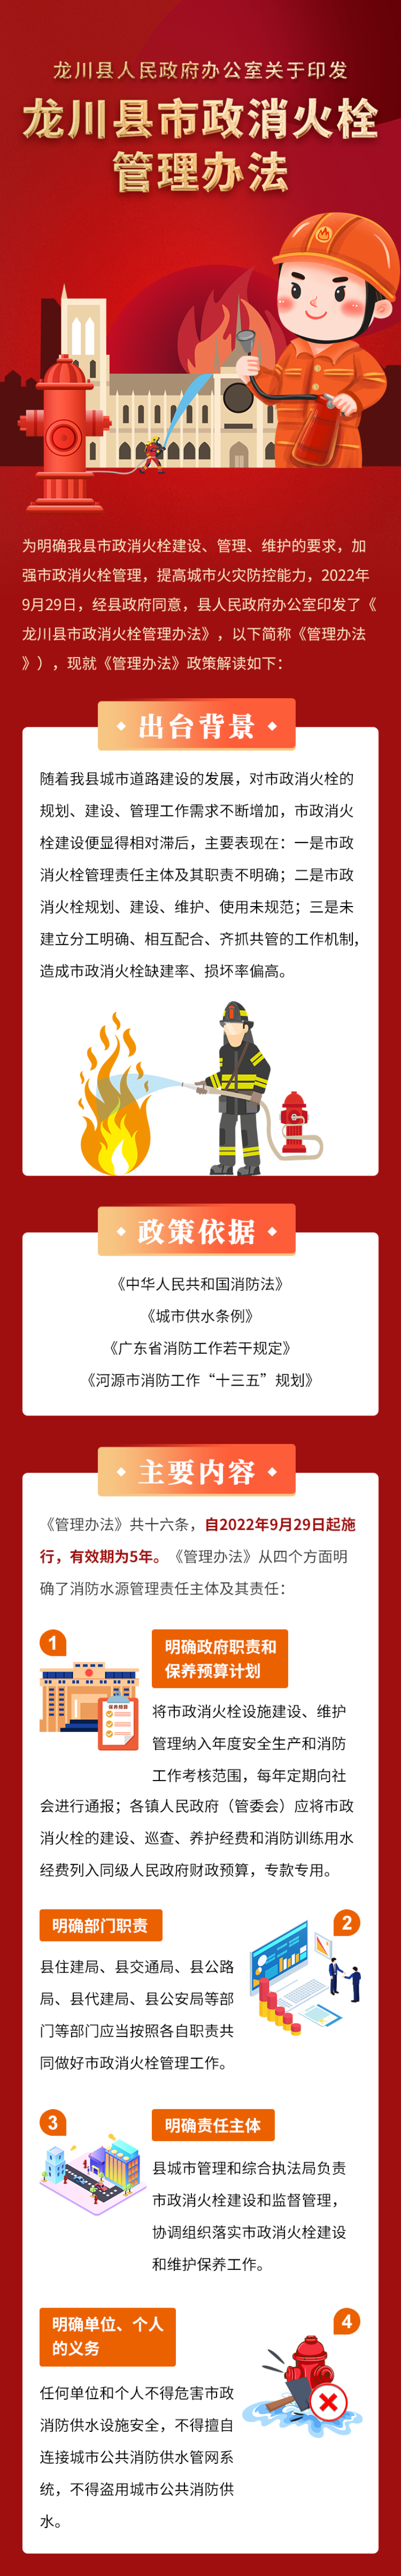 龙川县人民政府办公室关于印发龙川县市政消火栓管理办法的通知.jpg